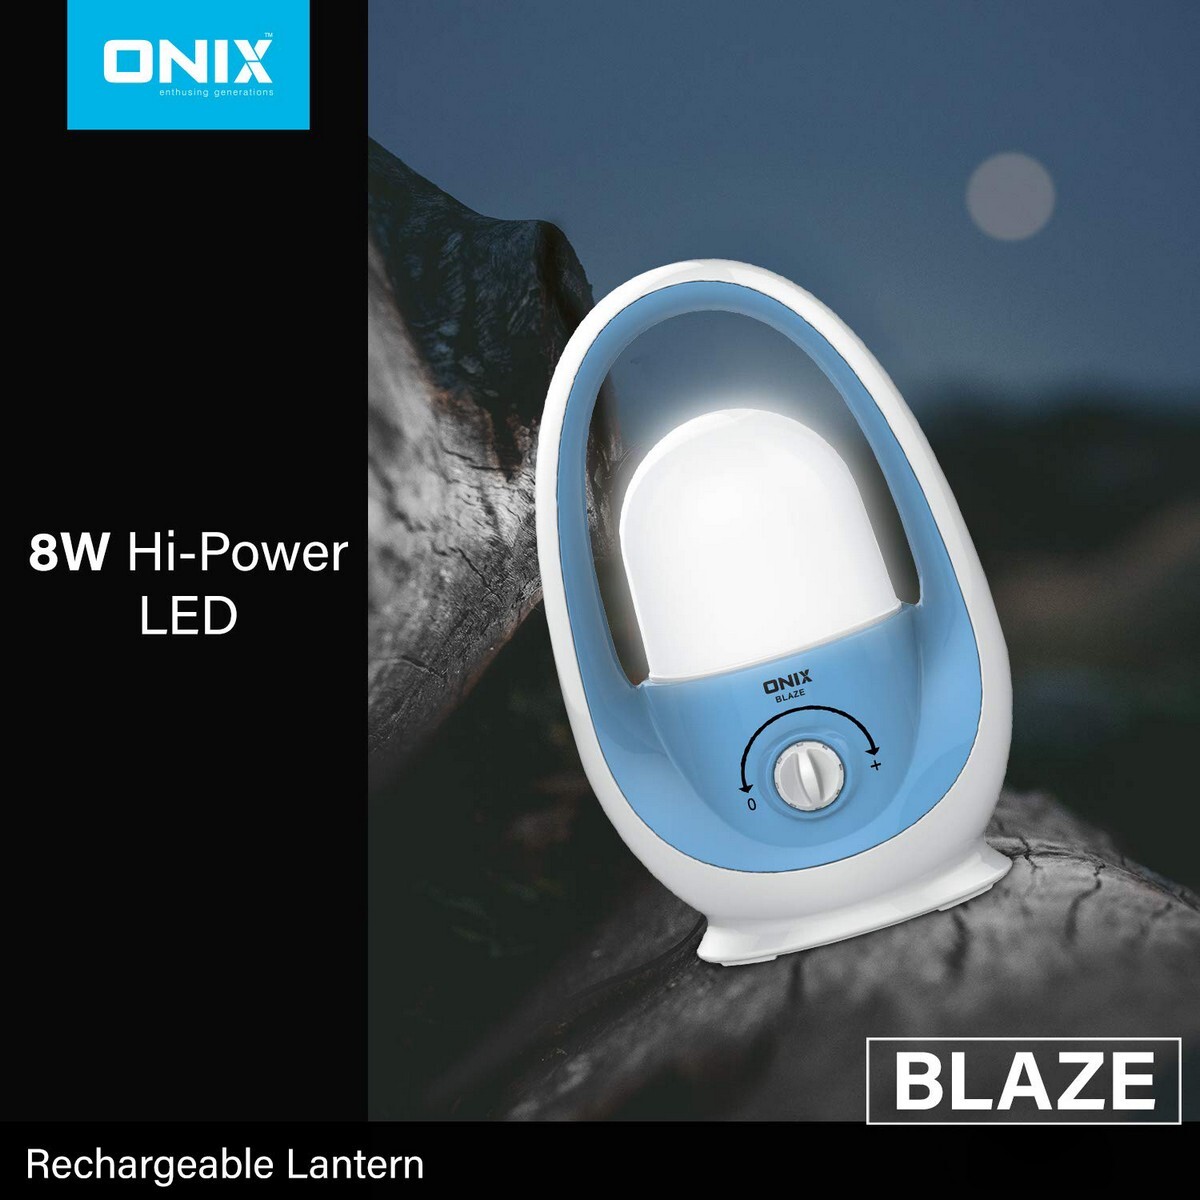 Onix Rich LED Lantern - Blaze